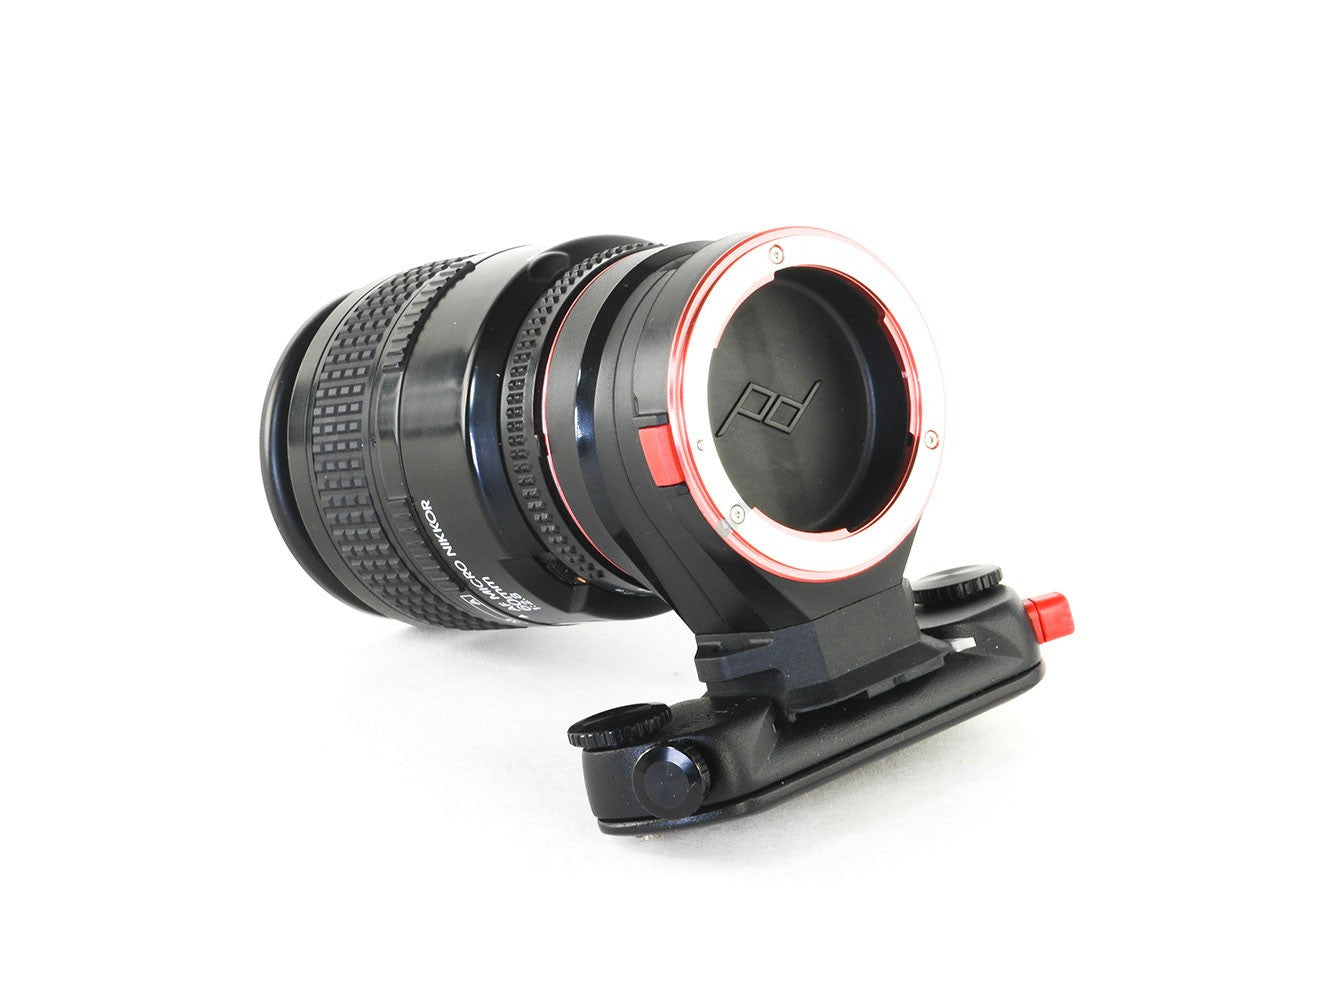 Peak Design Capture Lens Clip for Nikon Lenses, bags accessories, Peak Design - Pictureline  - 4